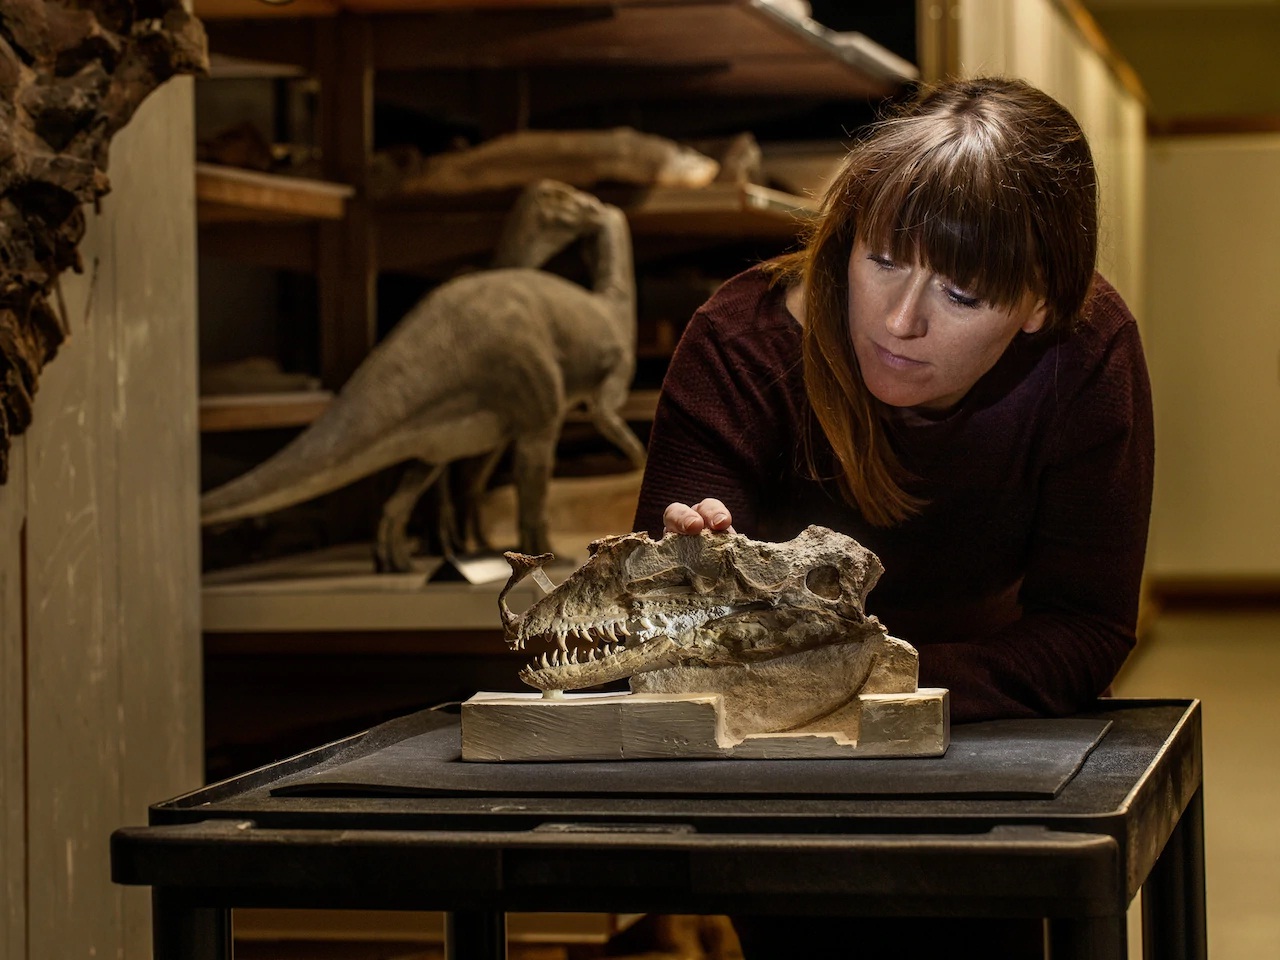 Susannah Maidment kiểm tra chiếc sọ duy nhất của loài Proceratosaurus bradleyi, từng sống ở khu vực ngày nay là hạt Gloucestershire, Anh, khoảng 166 triệu năm trước. Loài vật này là một trong những thành viên đầu tiên của nhóm đã phát sinh ra khủng long bạo chúa.